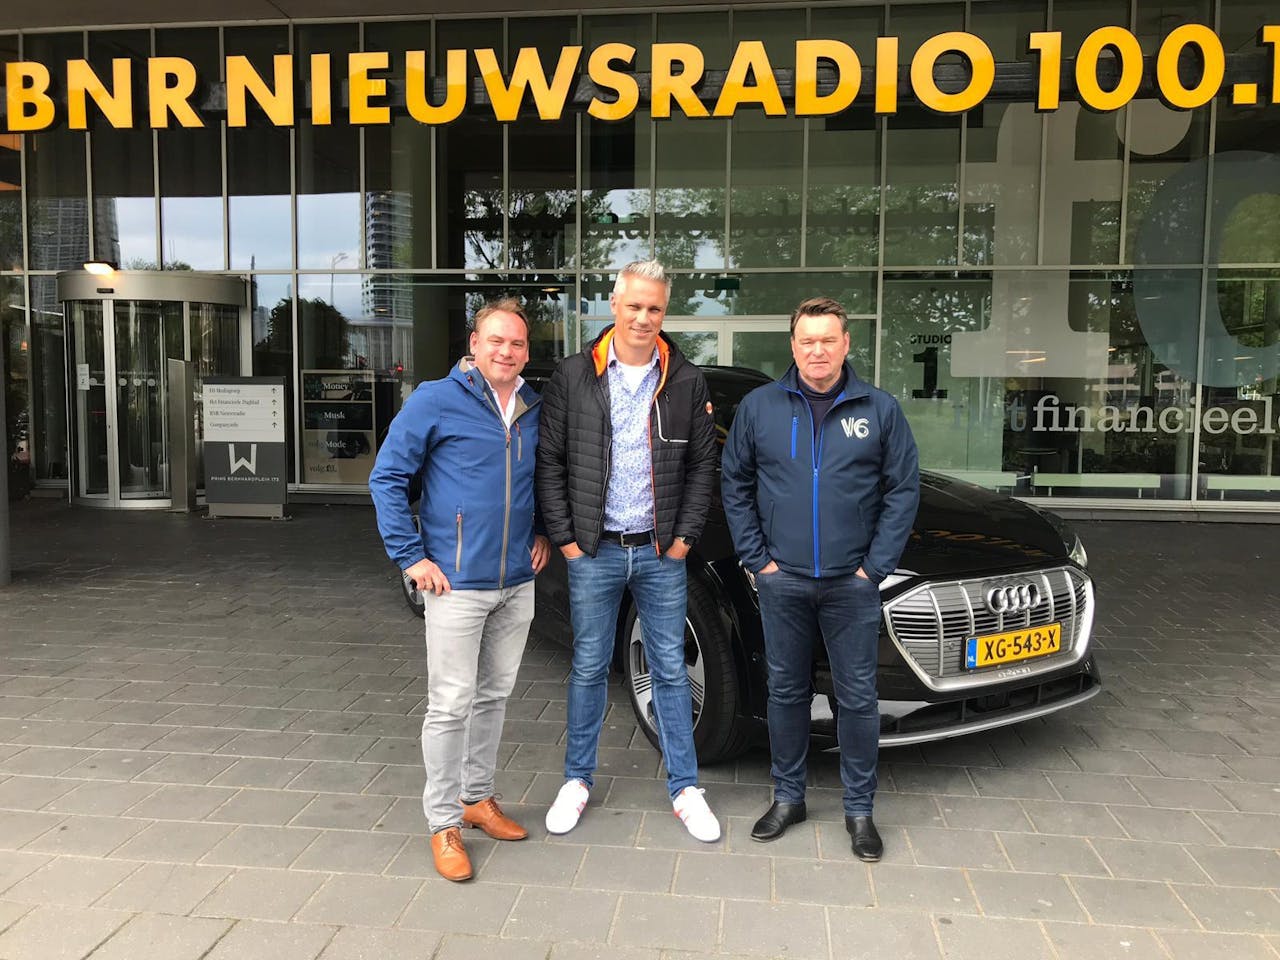 vlnr: Meindert Schut, Wouter Karssen, Bram Schot bij BNR Nieuwsradio in Amsterdam